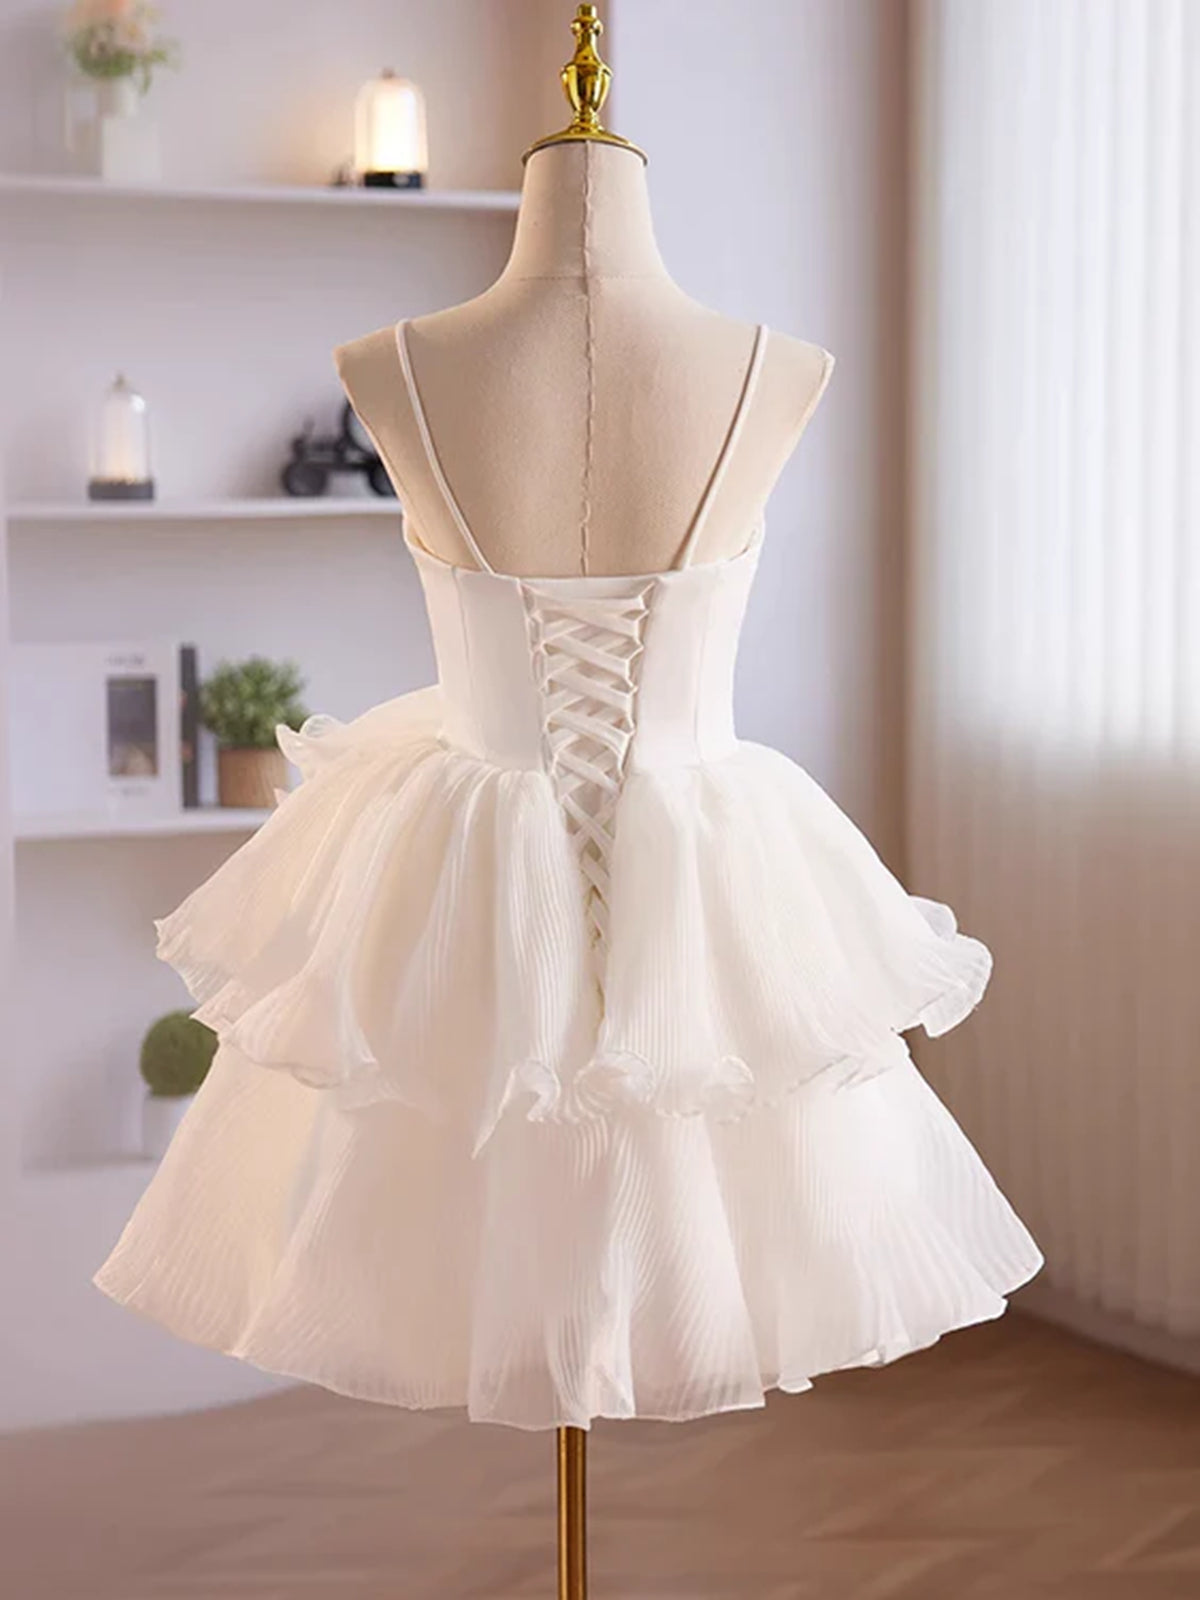 Long Sleeve Prom Dress, Short White Tulle Prom Dress, Short White Tulle Formal Homecoming Dresses